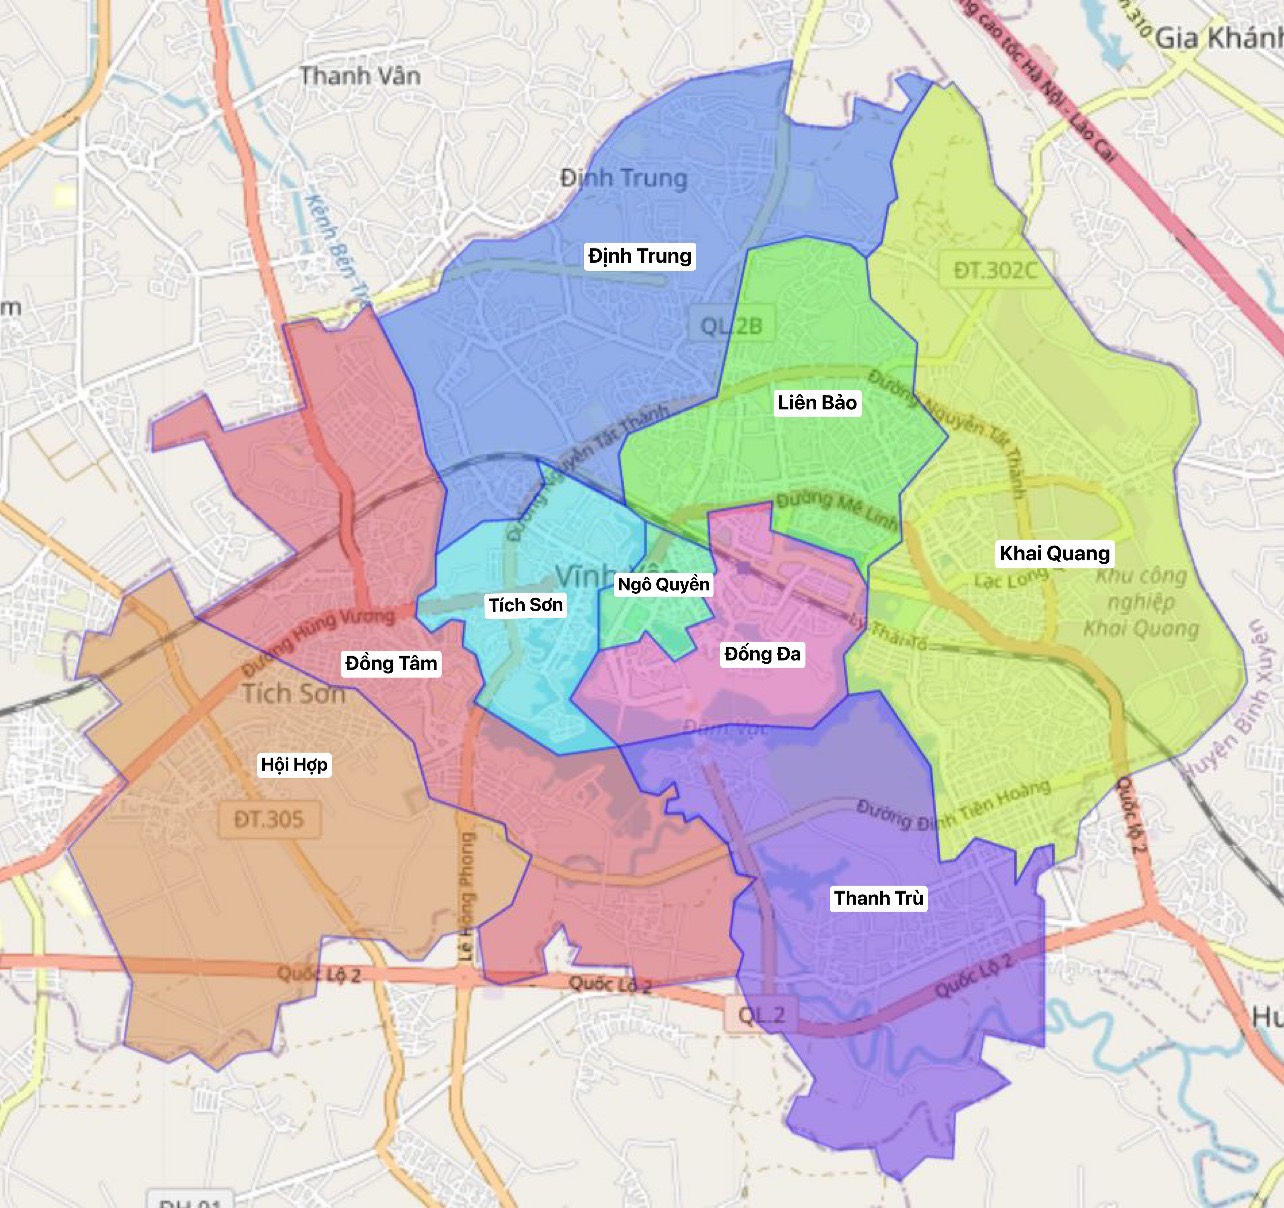 Bản đồ Vĩnh Yên năm 2024 sẽ cho thấy sự phát triển của thành phố, với những dự án quan trọng được triển khai như khu đô thị mới Tân Phú, trung tâm thương mại Vĩnh Phúc, và khu công nghiệp Yên Lạc đang nở rộ. Hãy xem bản đồ để cập nhật thông tin chi tiết về thành phố Vĩnh Yên.